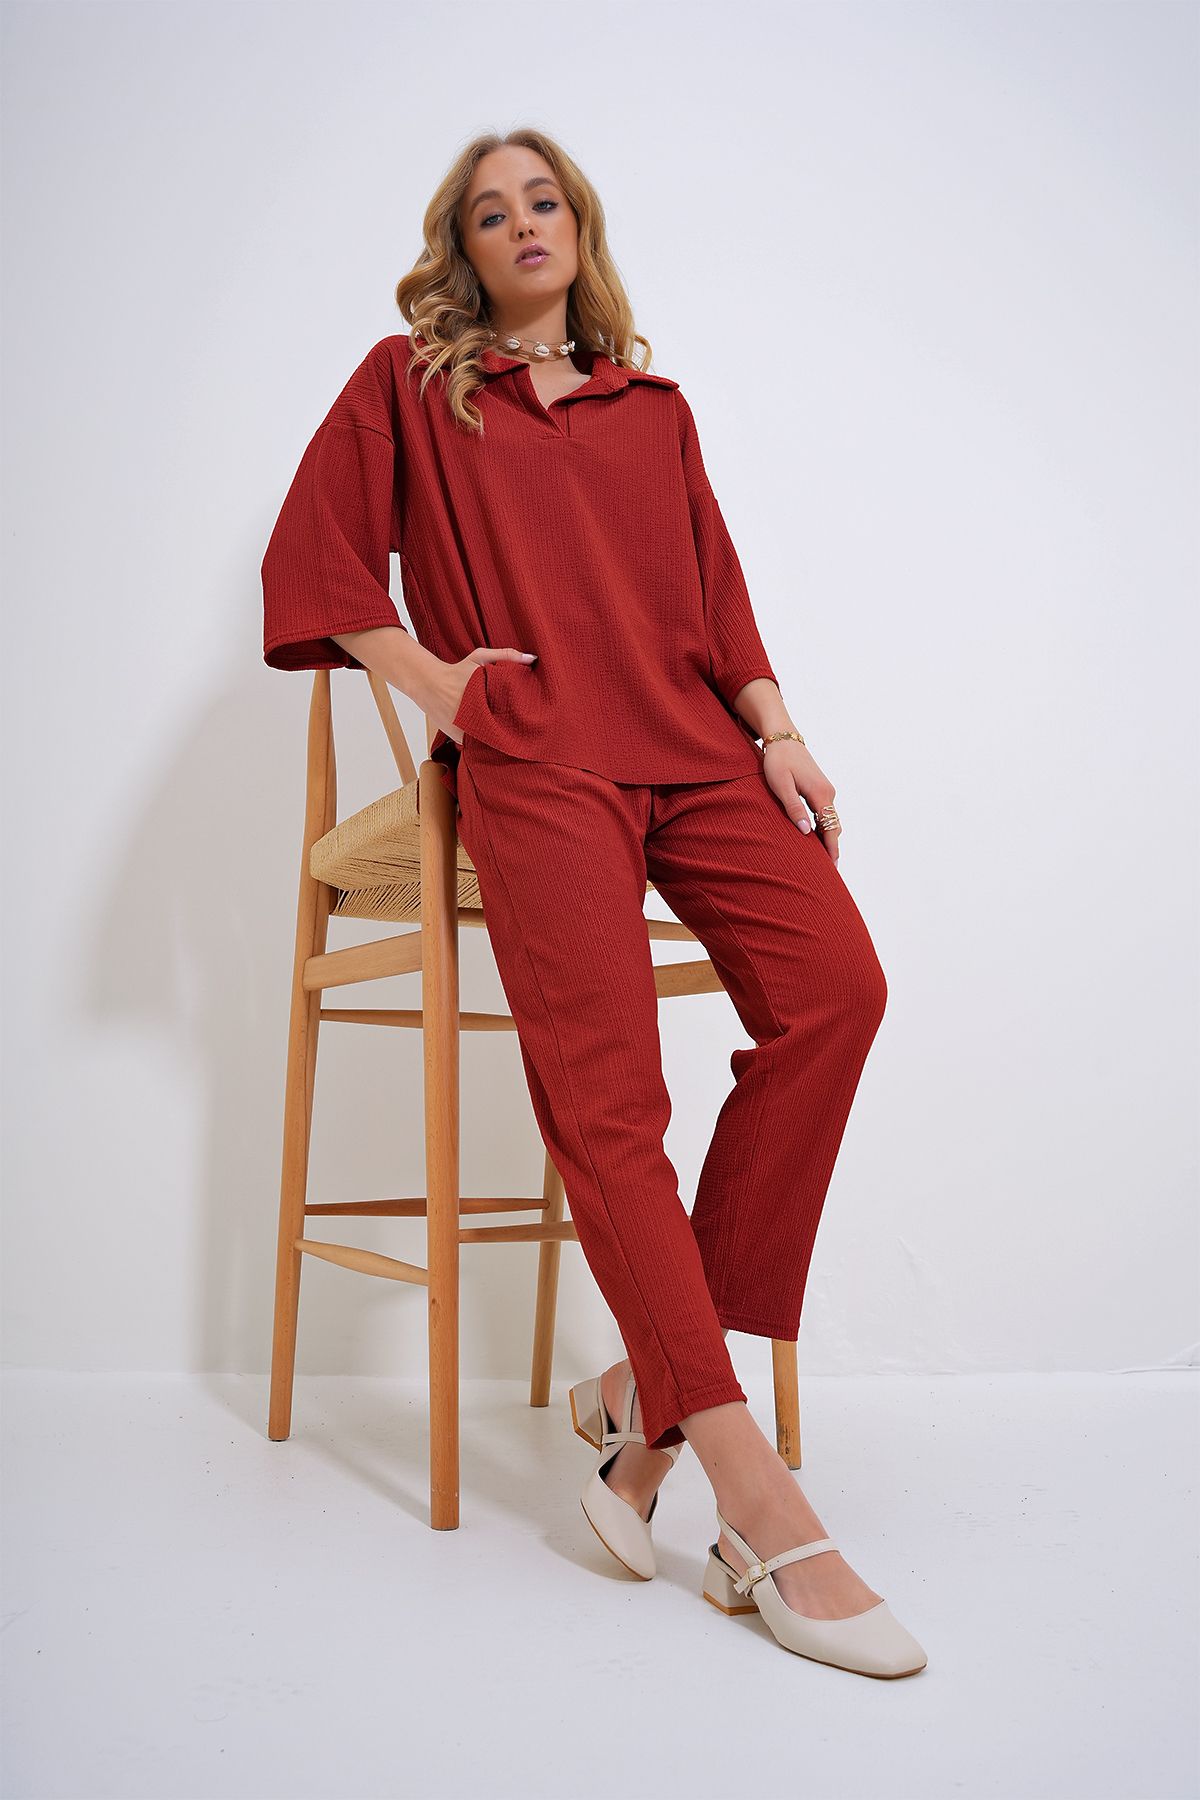 Trend Alaçatı Stili Kadın Kiremit Oversize Gömlek Yaka Bluz Ve Yüksek Bel Pantolon Takım ALC-X12217